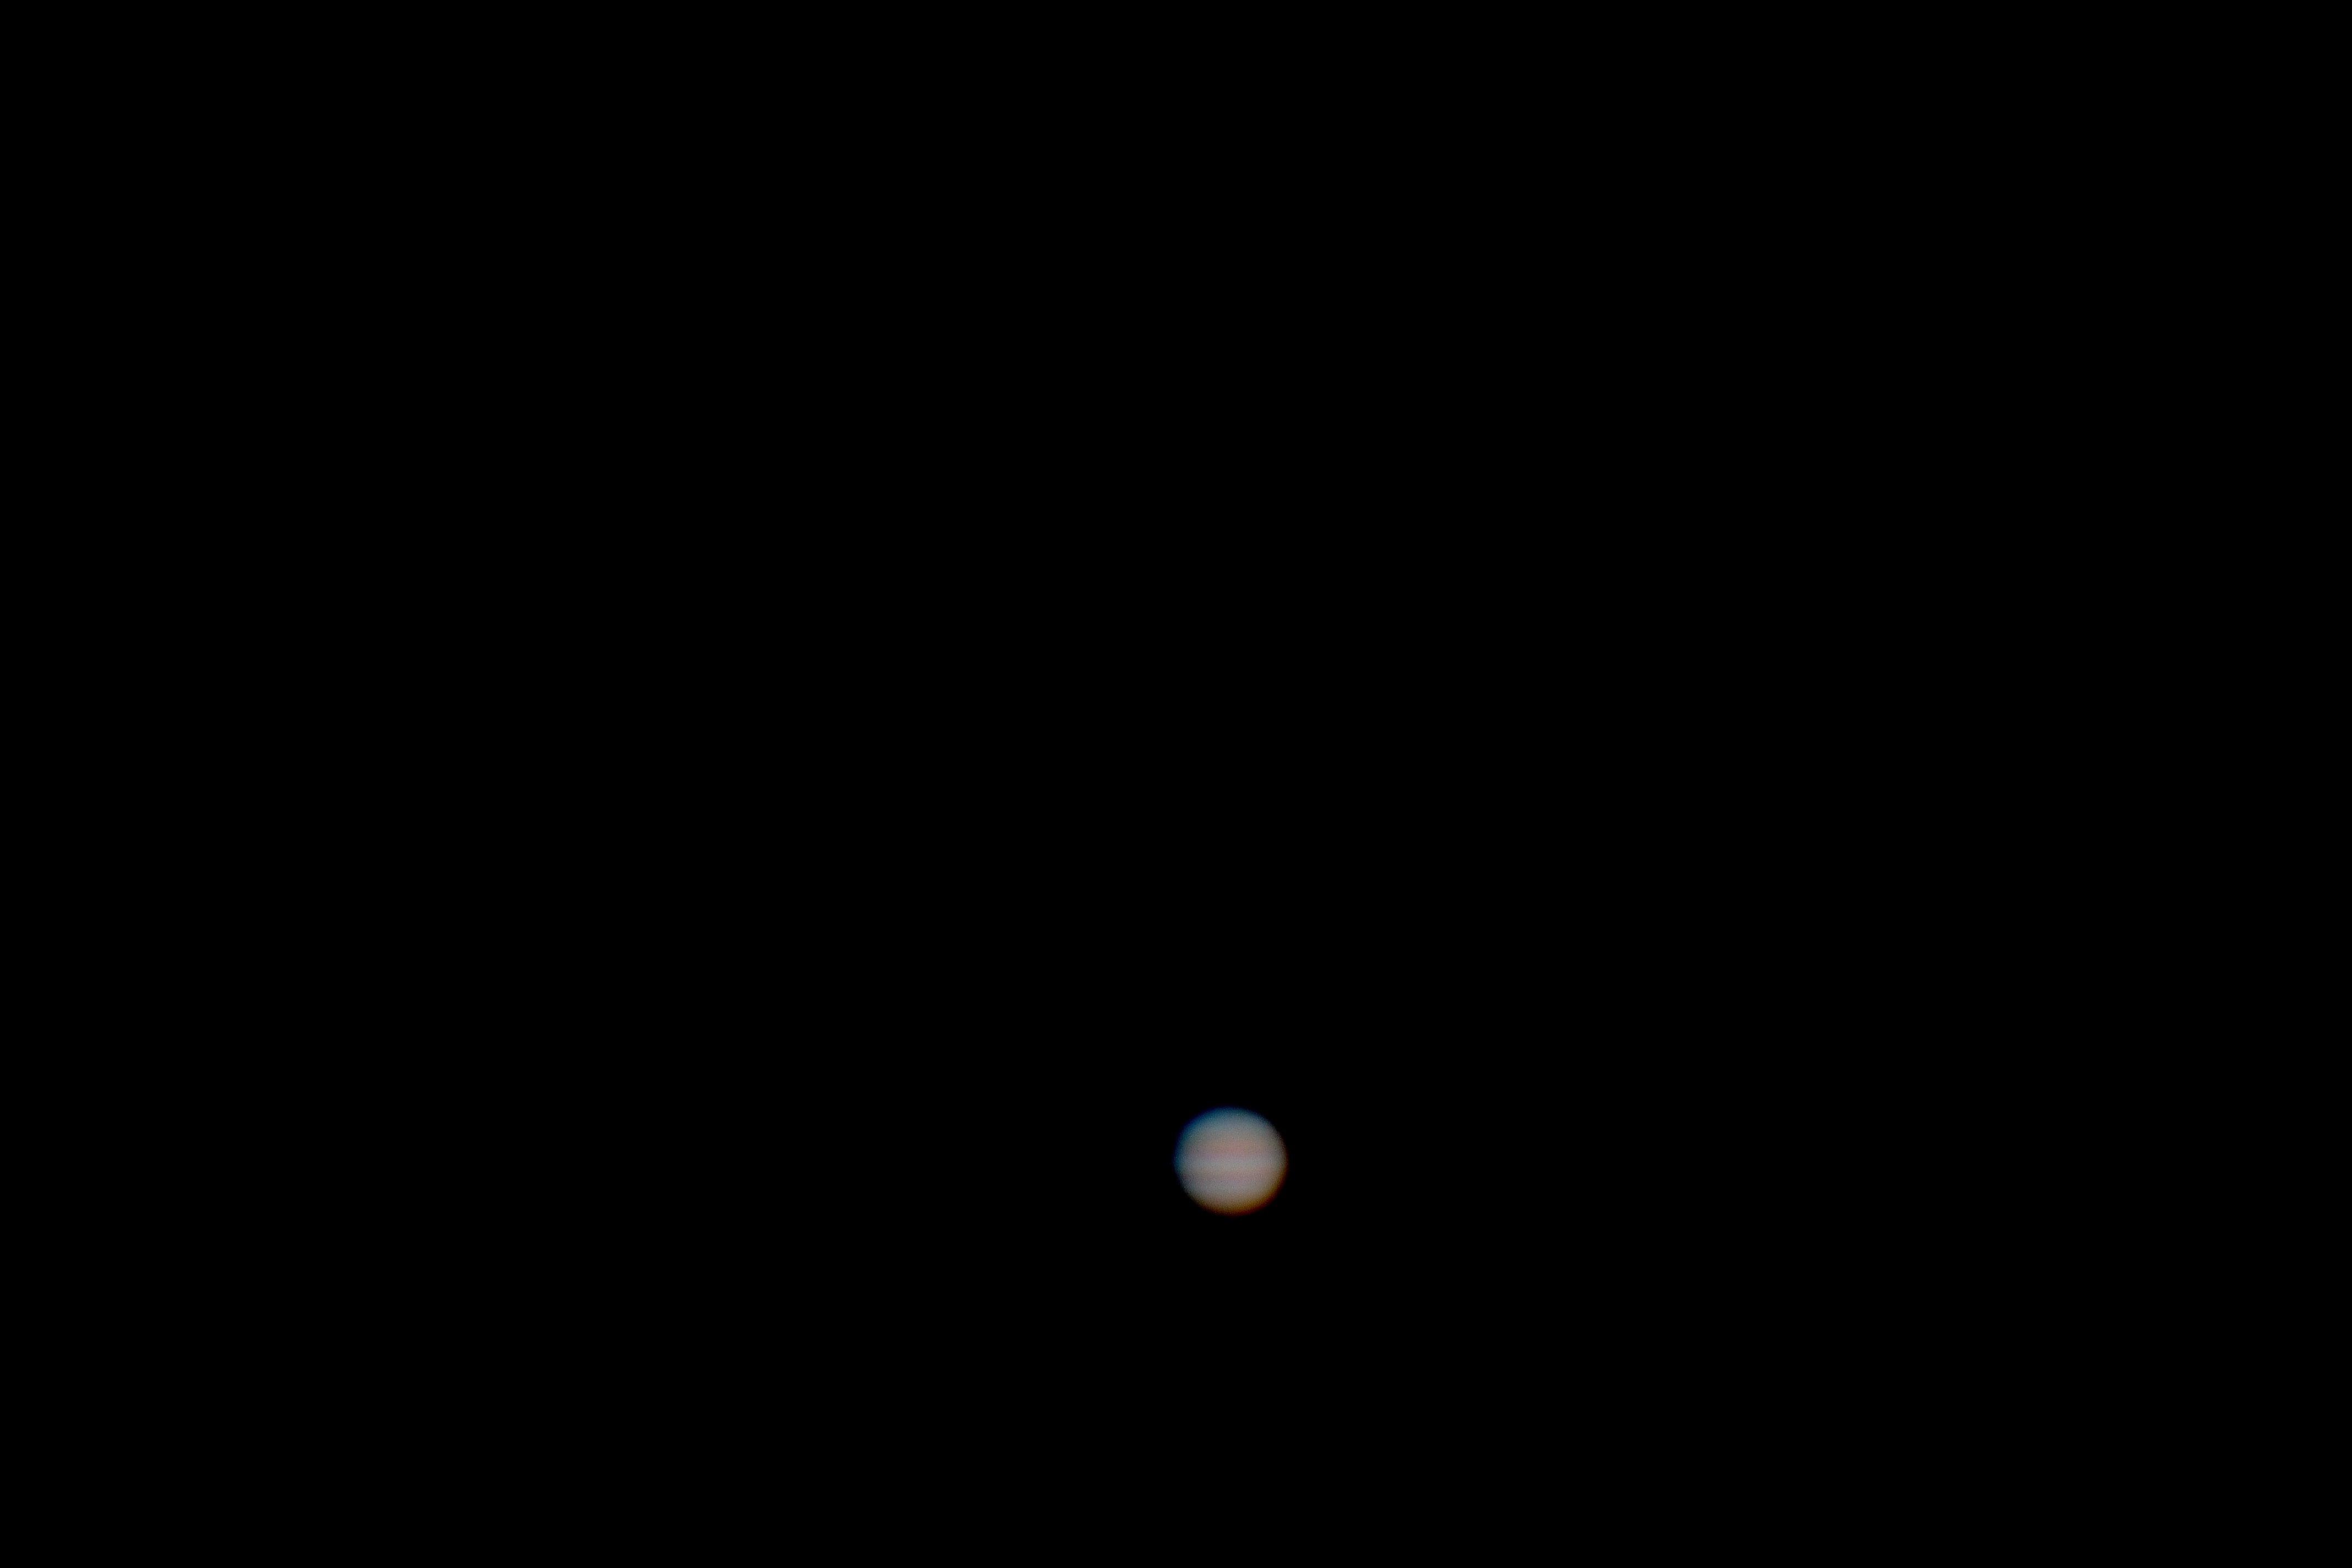 Наблюдение  за  созвездиями  Тельца, Близнецов, Ориона  и    планетой  Юпитер  05.02.2013